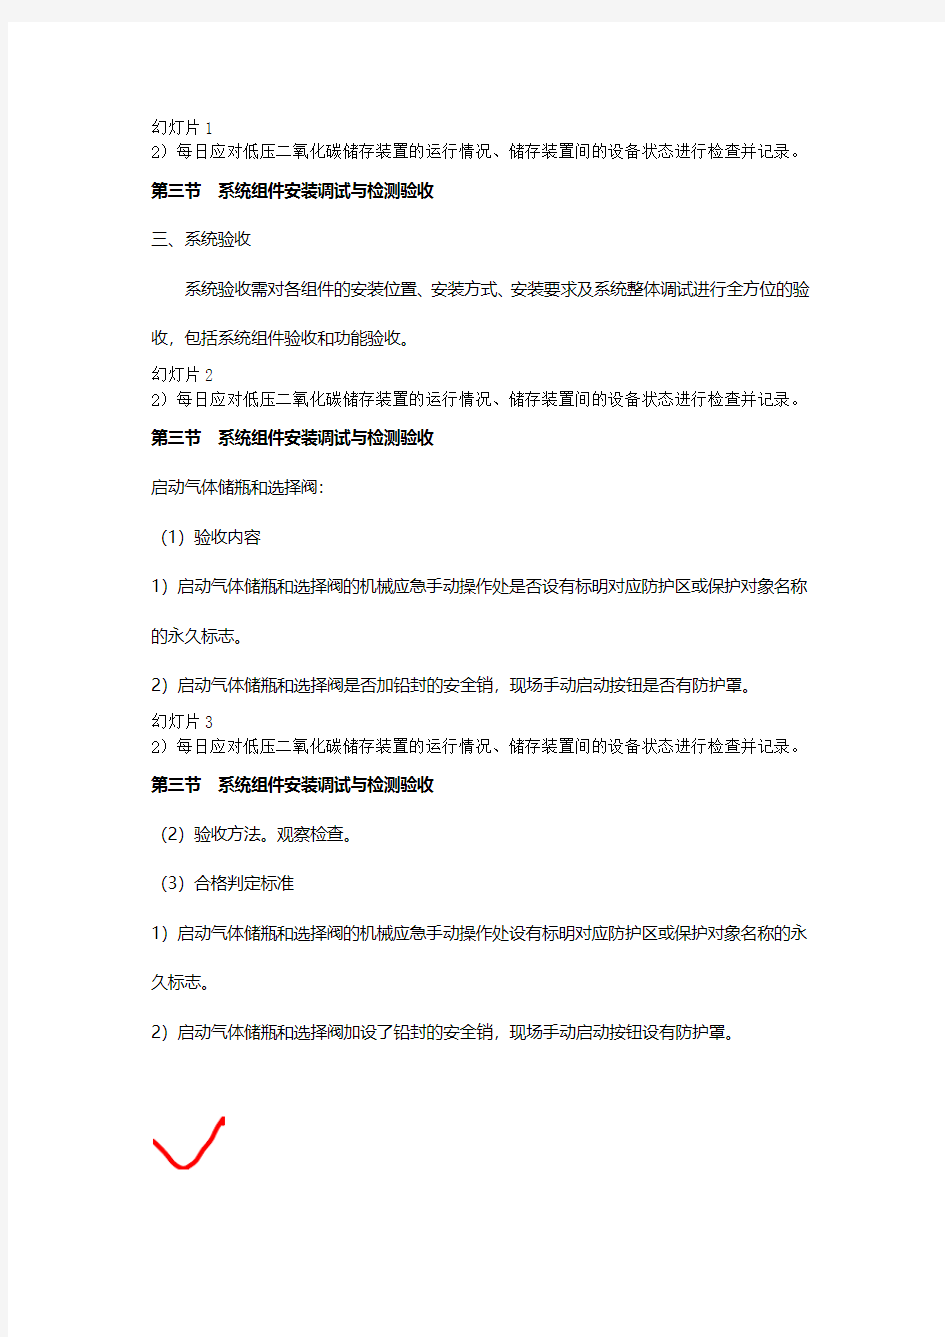 13-2 刘为国-消防工程师-消防安全技术综合能力-精讲班(美工版2014.7.26) - 副本